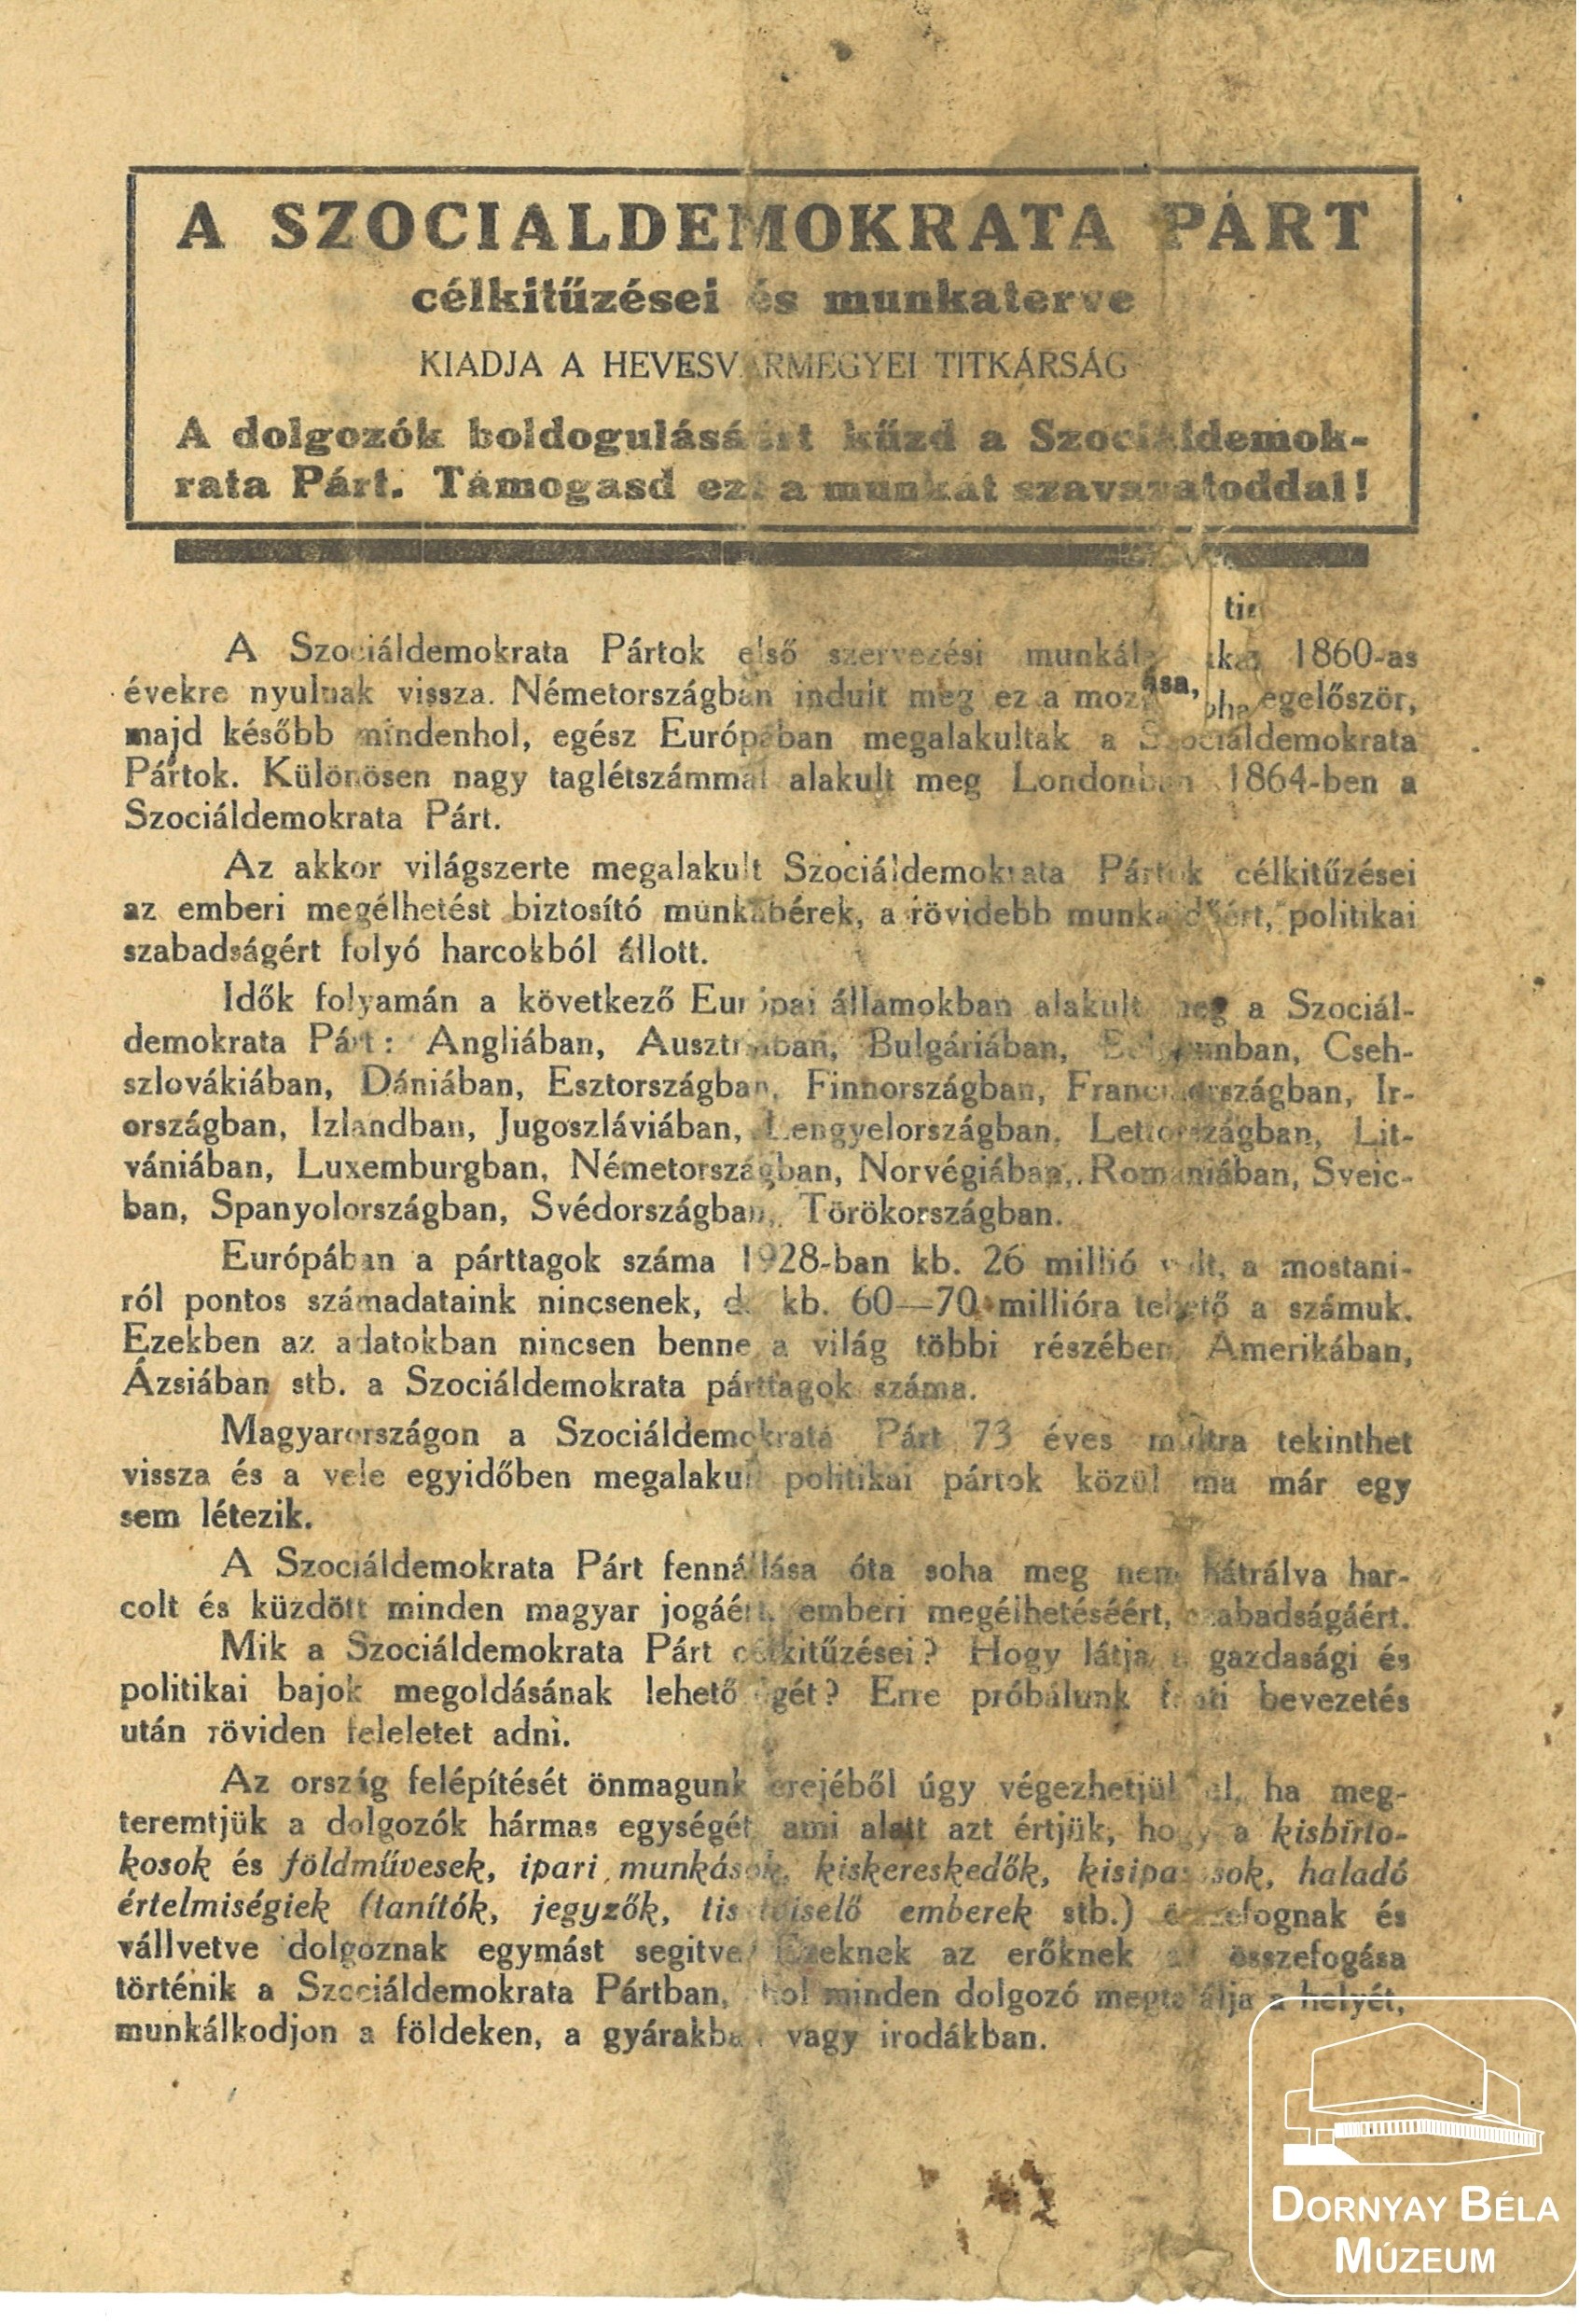 A szociáldemokrata párt célkitűzései és munkaterve. (Dornyay Béla Múzeum, Salgótarján CC BY-NC-SA)